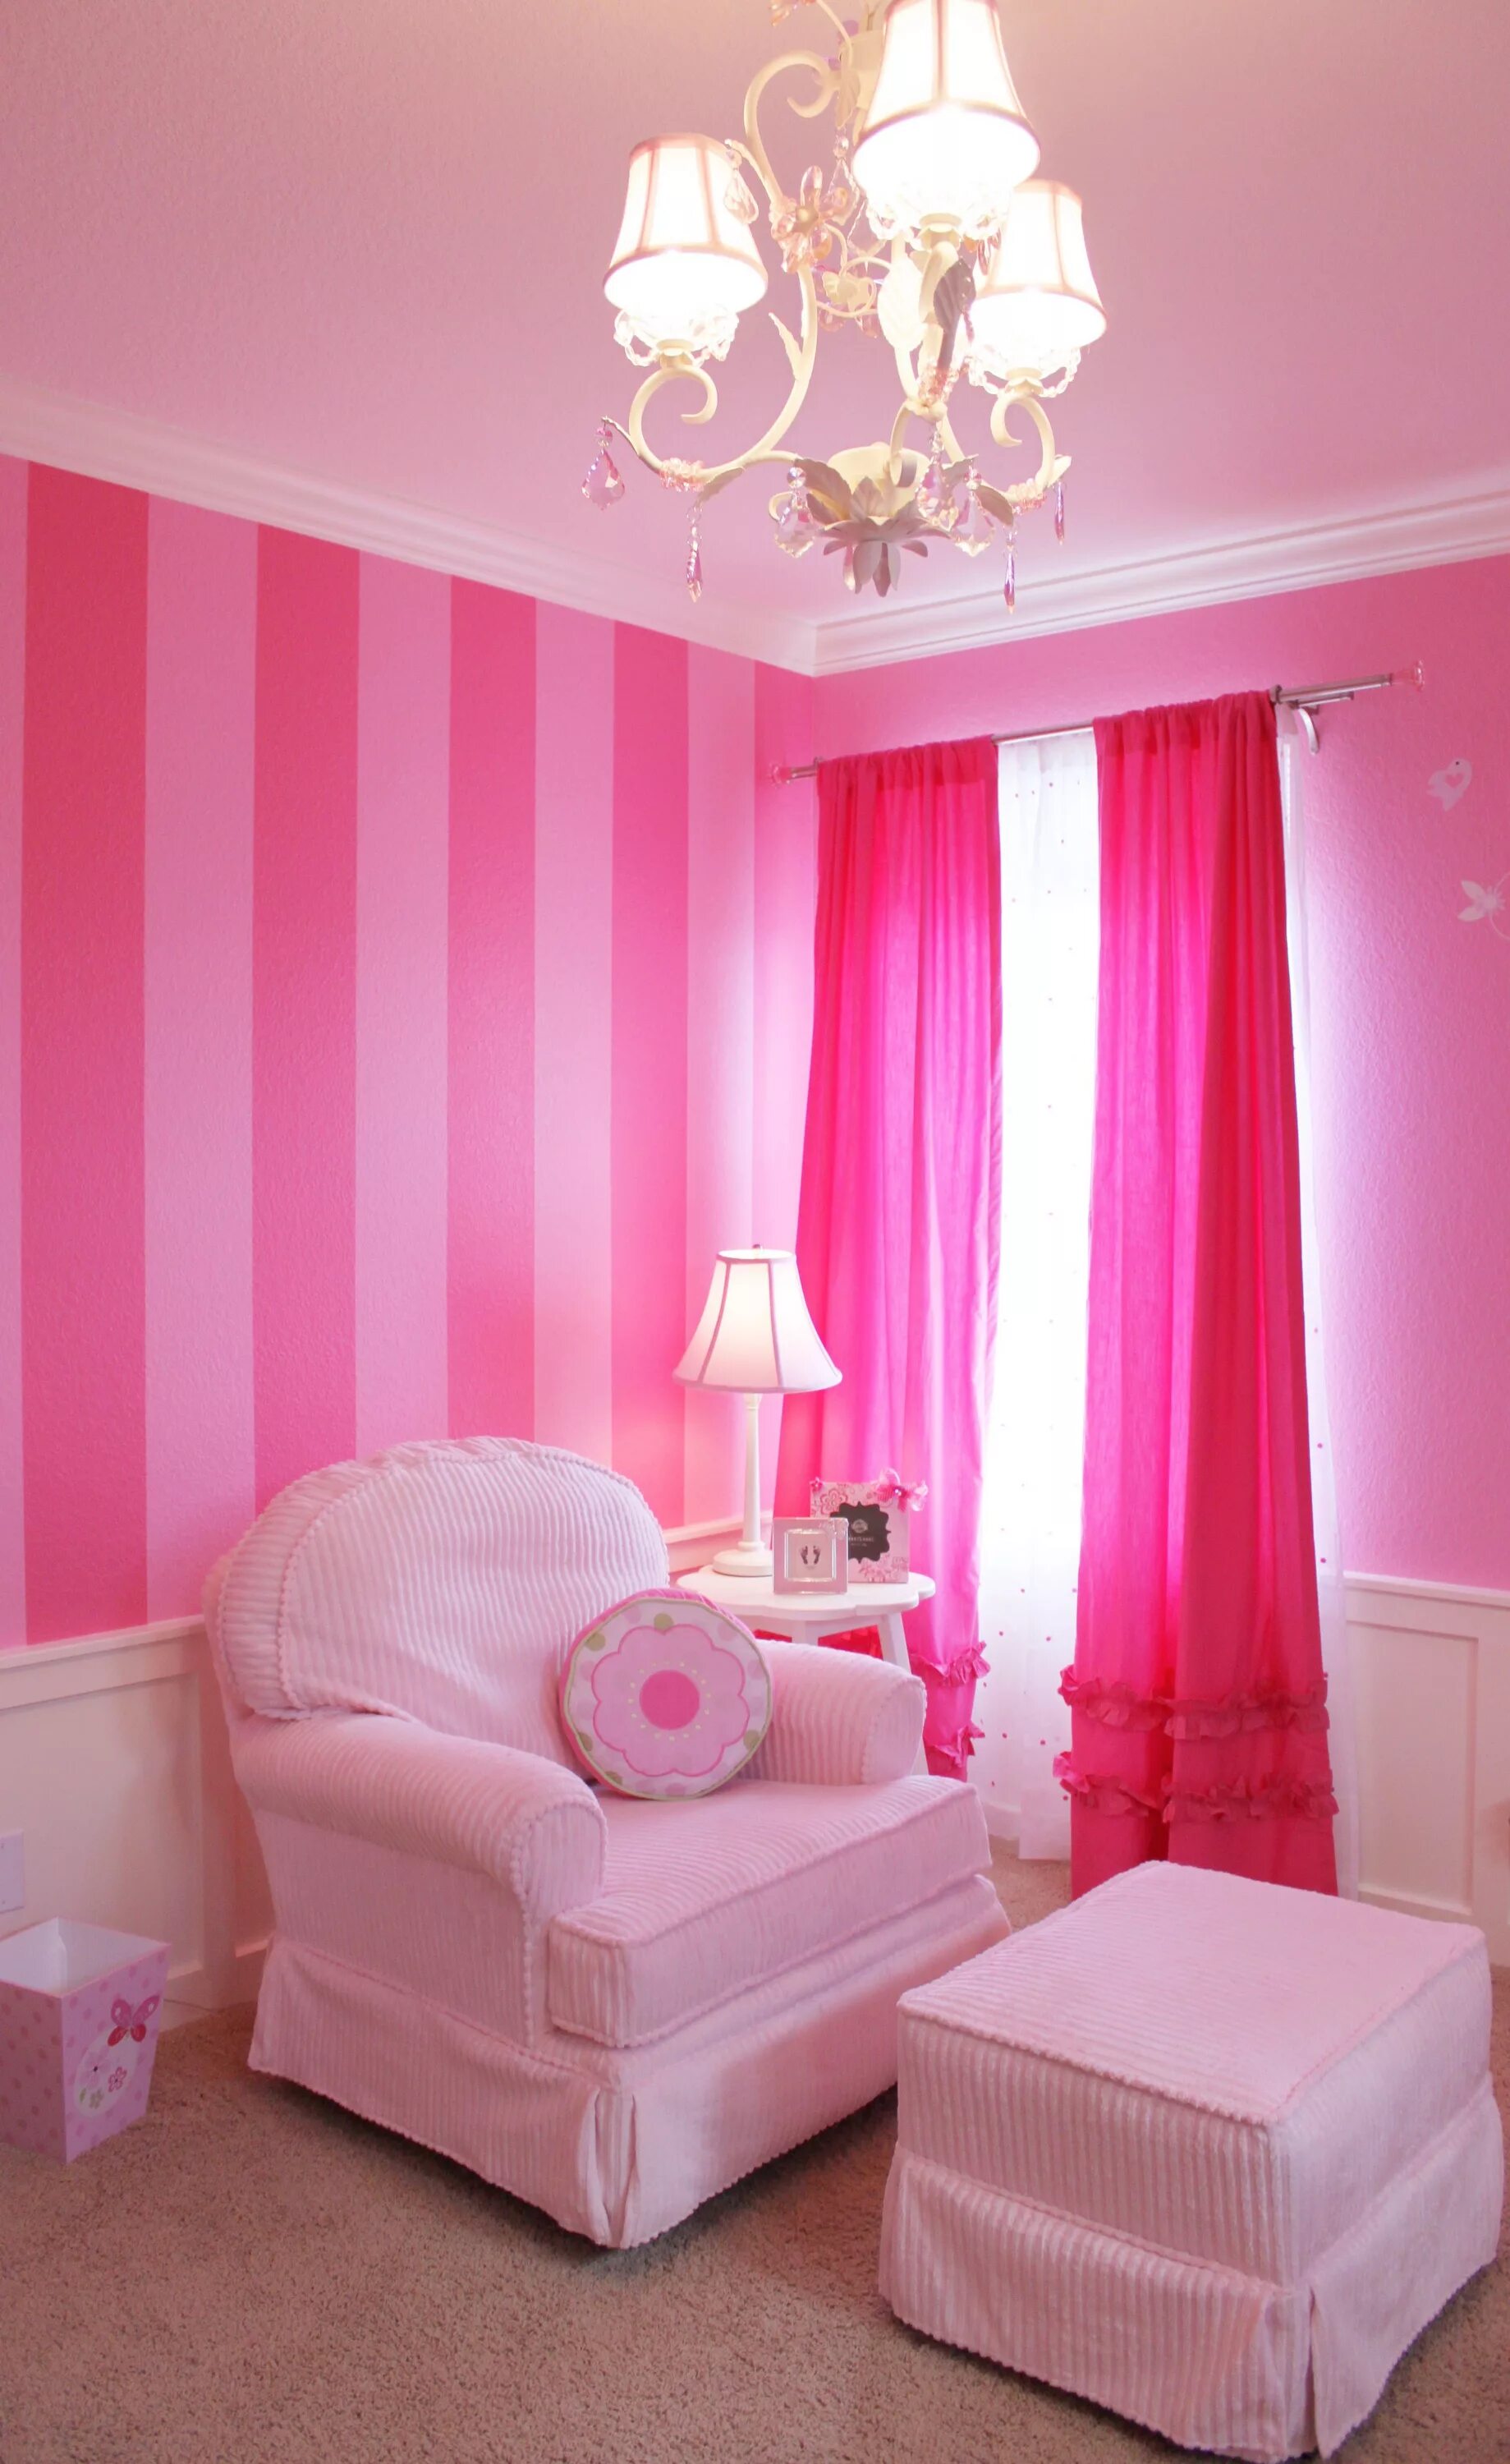 Комната в розовом цвете. Розовый цвет в интерьере. Комната для девочки розового цвета. Розовые стены в интерьере. Включи фотку розового